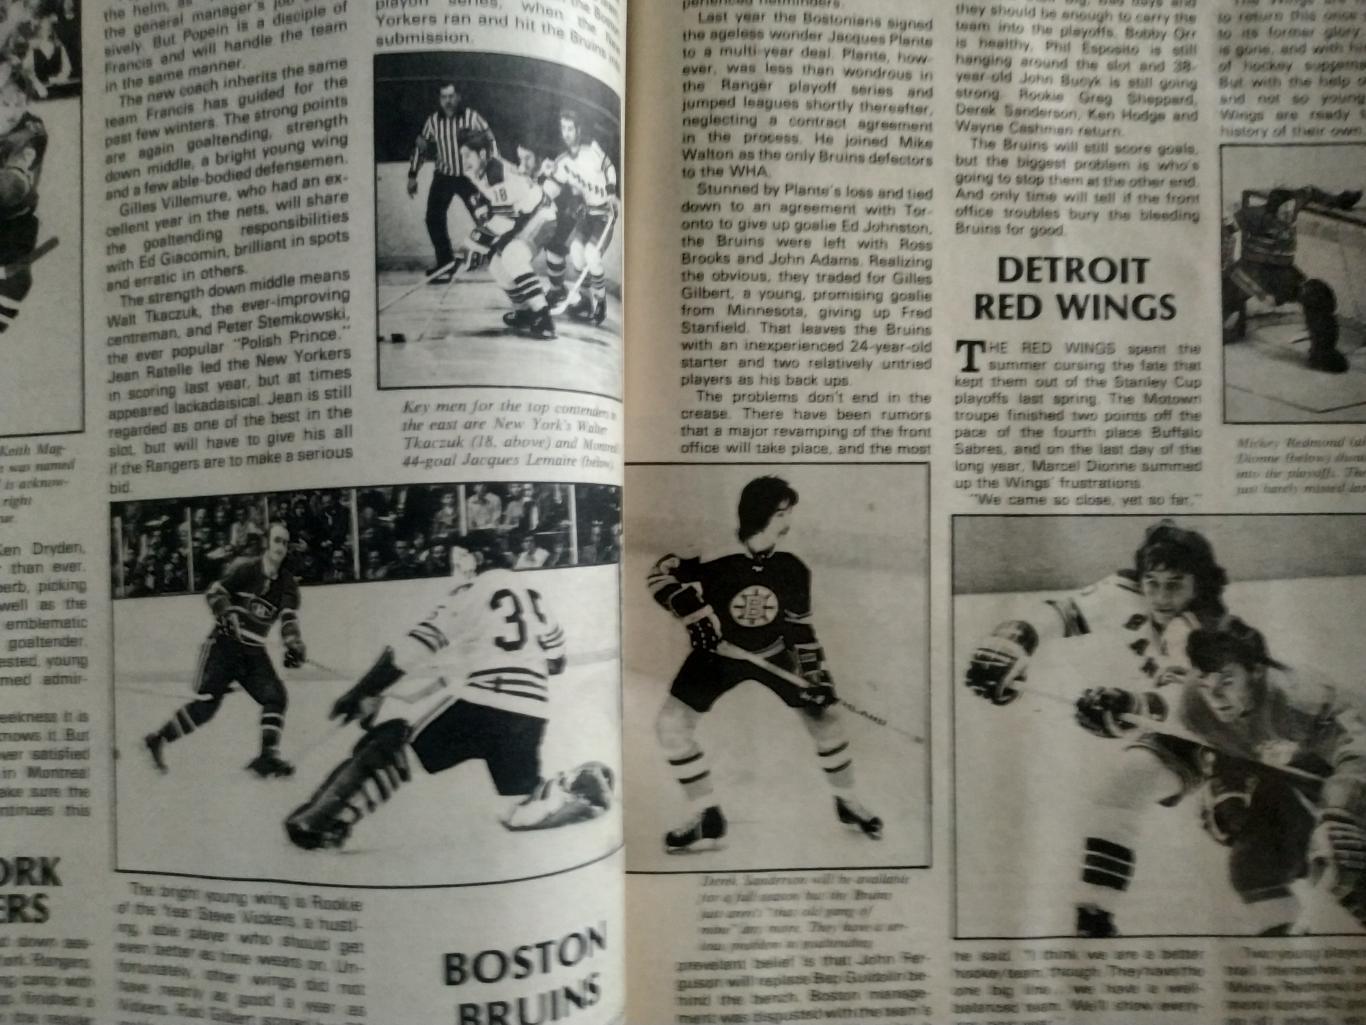 ЖУРНАЛ СПРАВОЧНИК НХЛ СПОРТ БЕН СТРОНГ ХОКЕЕЙ NOV 1973 NHL BEN STRONG HOCKEY 6